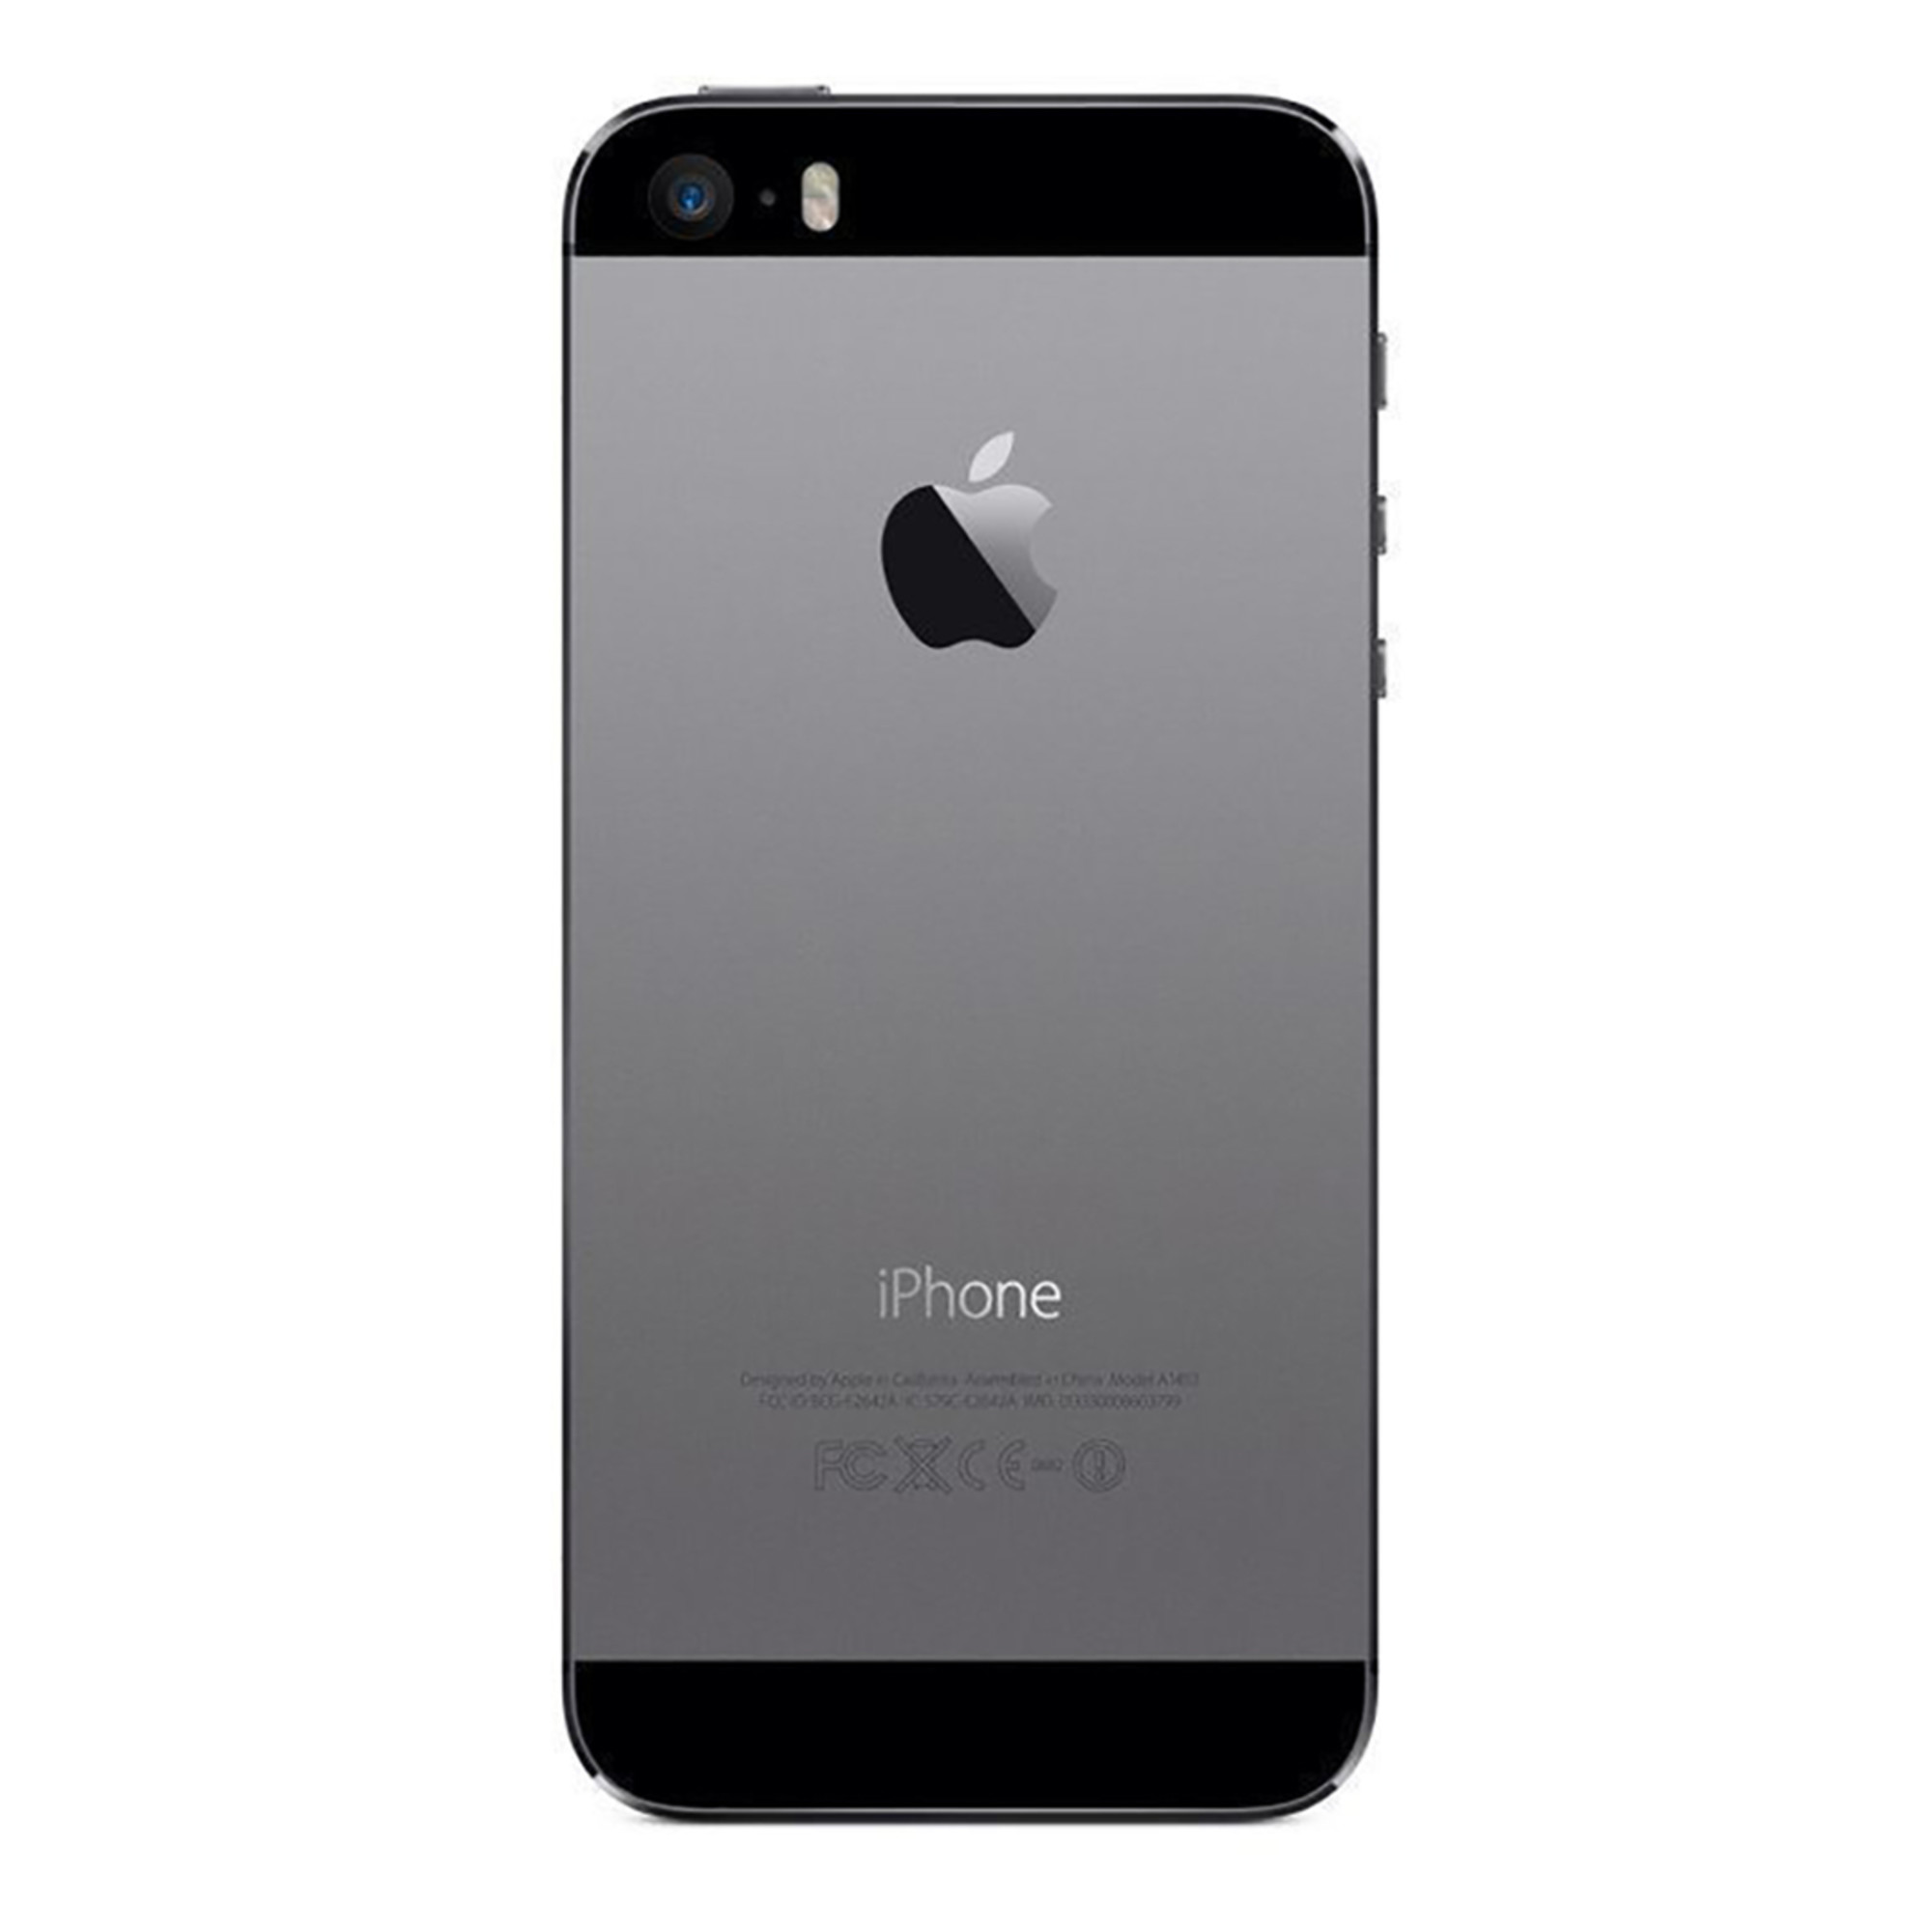 iPhone 5s Space Gray docomo GB 16